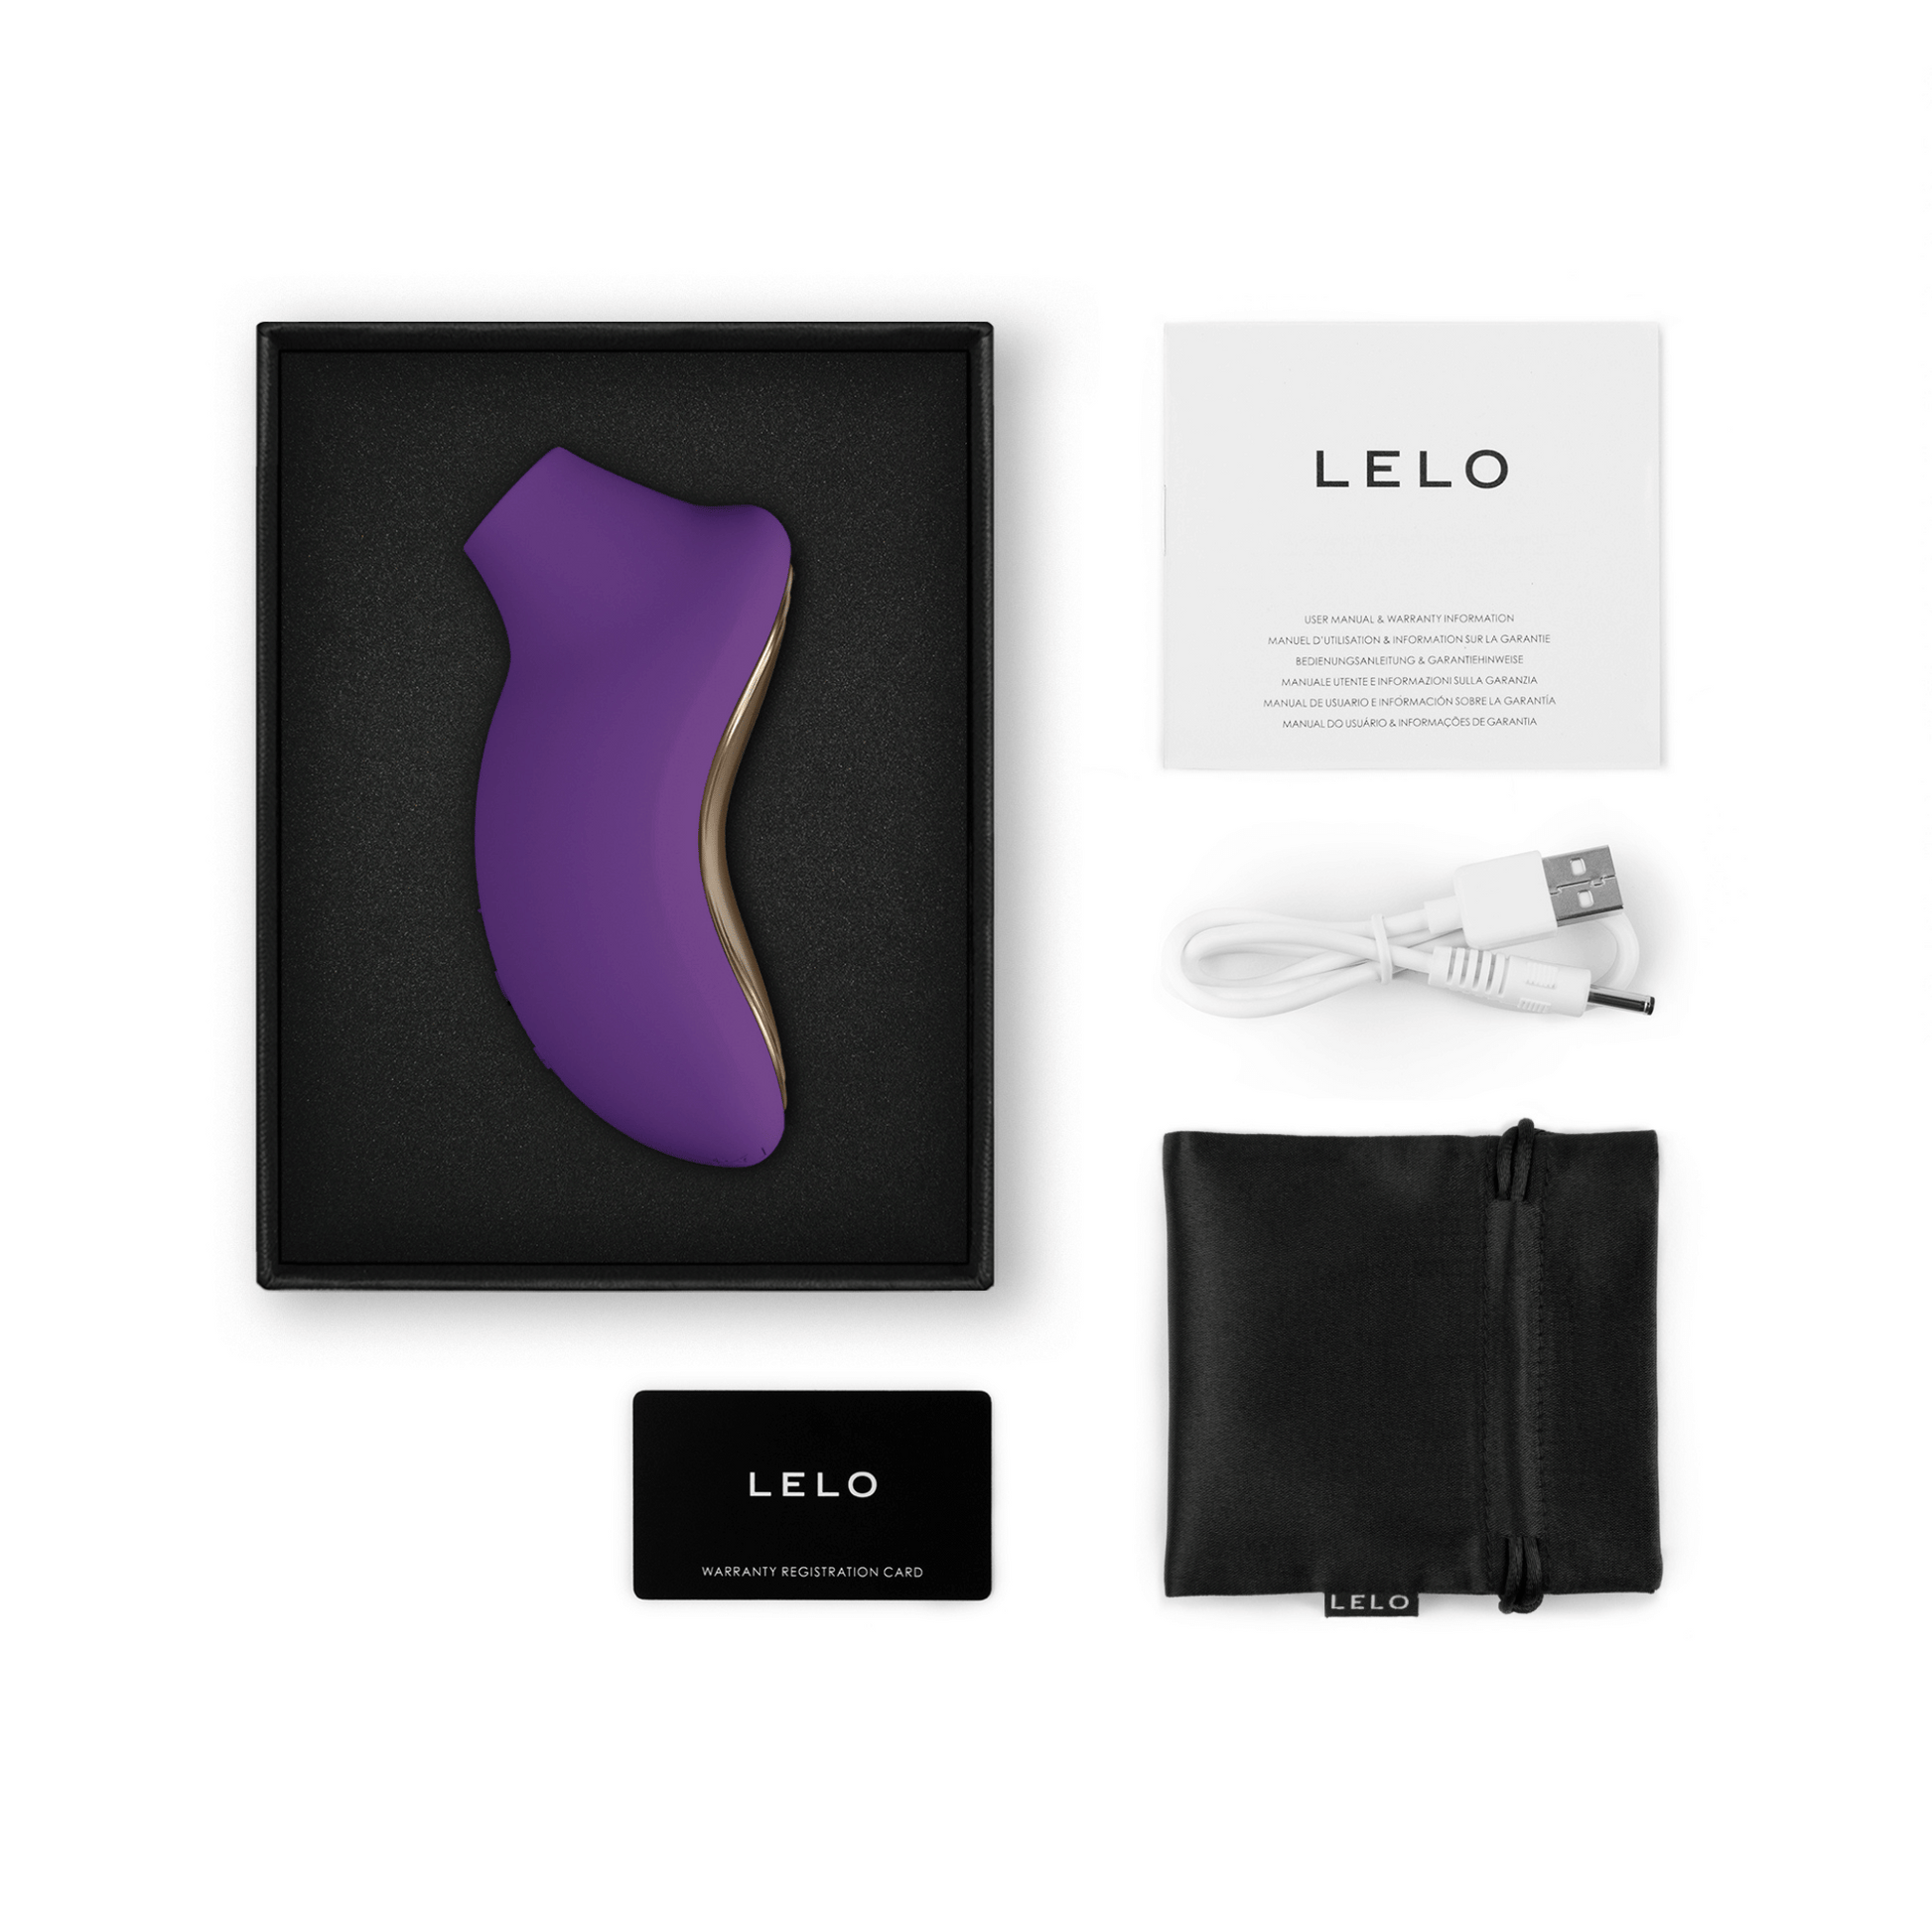 Sona 2 en violet présenté dans un coffret de luxe de Lelo, combinant esthétique et technologie avant-gardiste, sur OhMyGodz.fr.